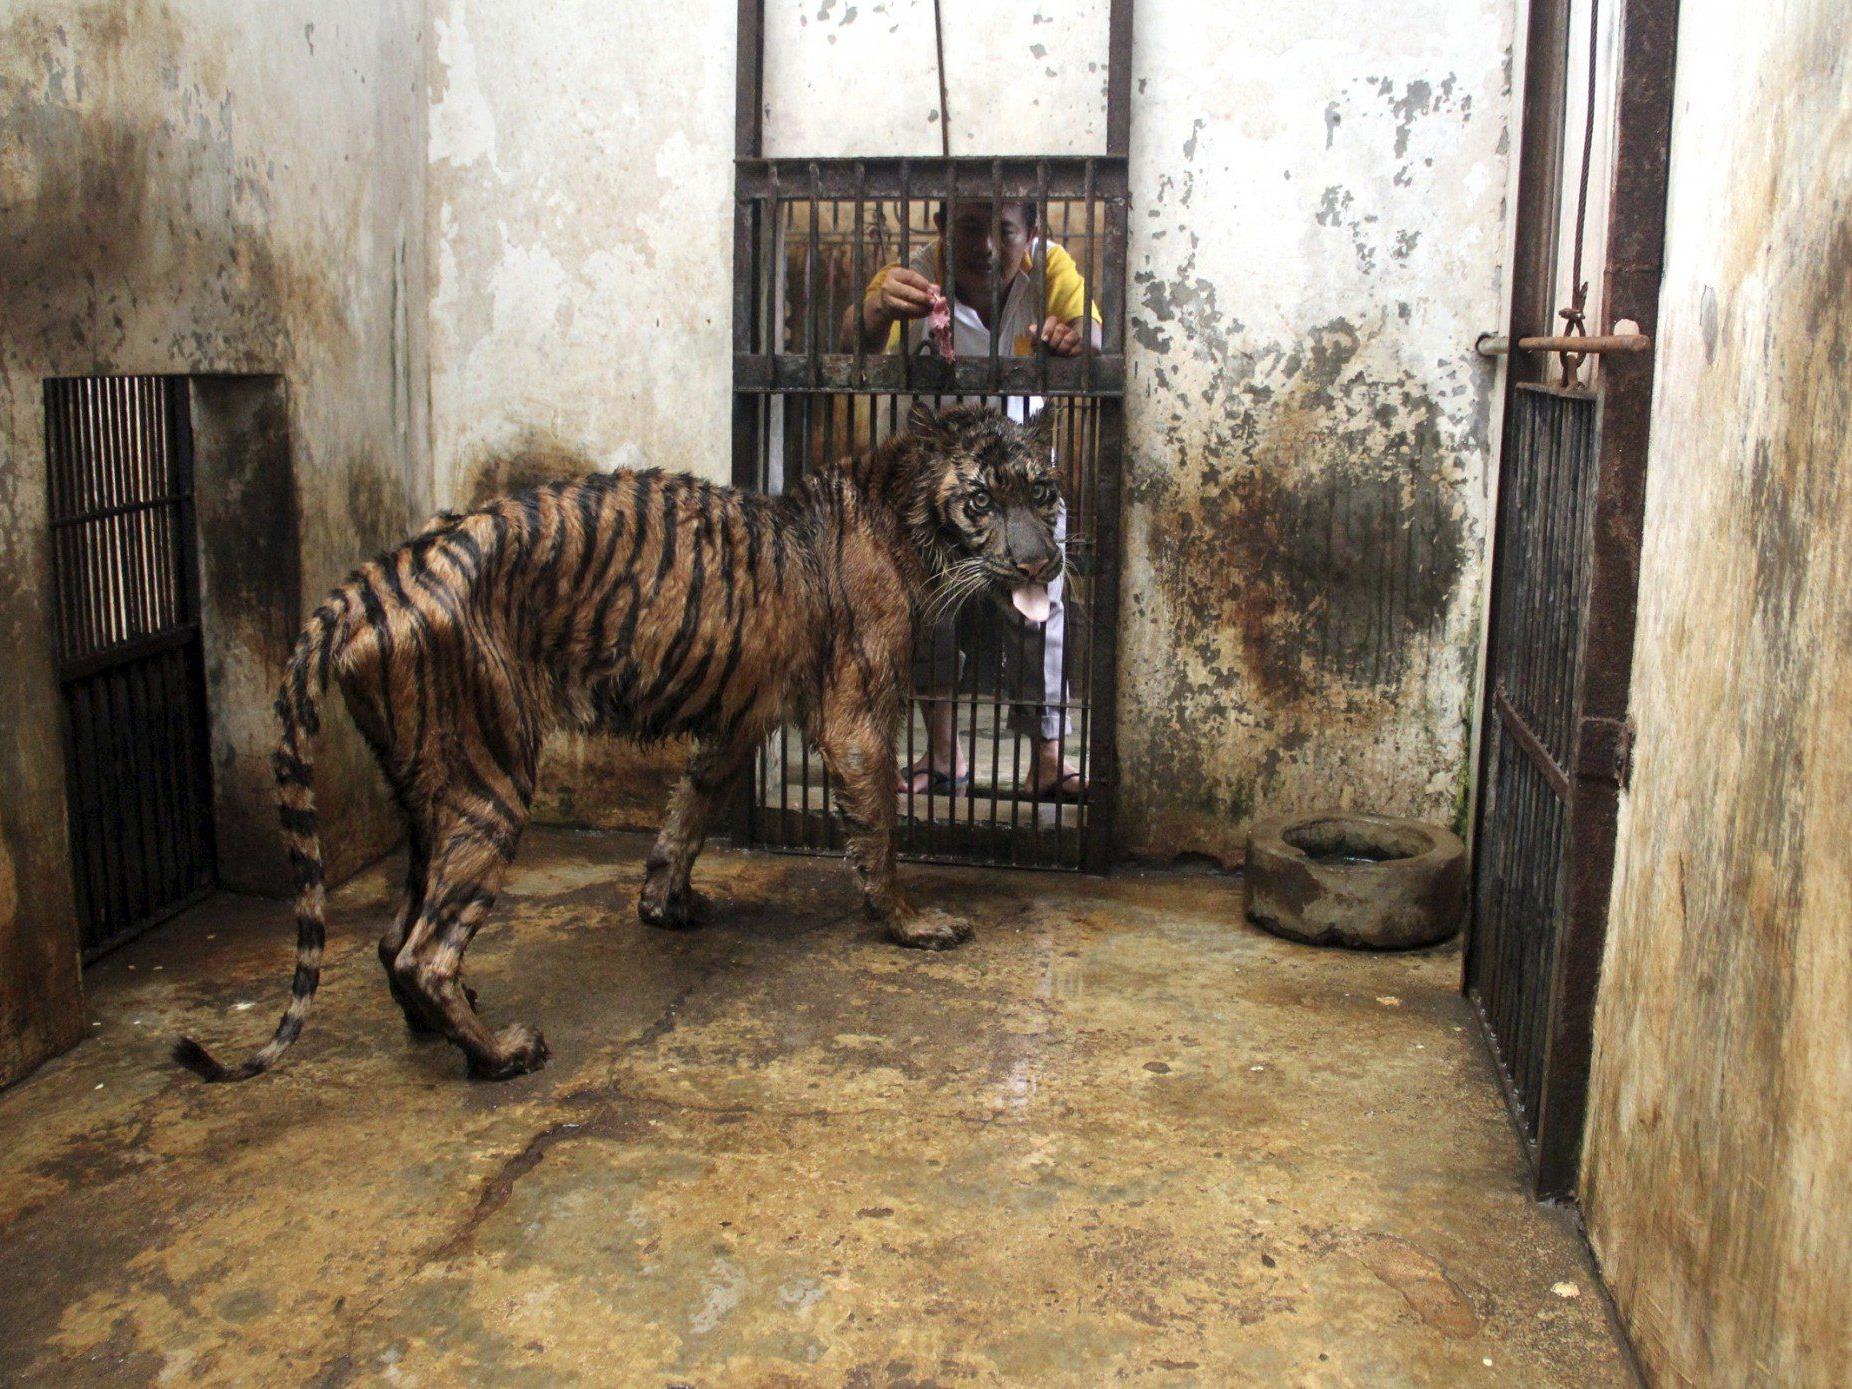 Kranke, unterernährte und verwahrloste Tiere - Tierschützer vermuten Verwaltungschaos und Korruption.